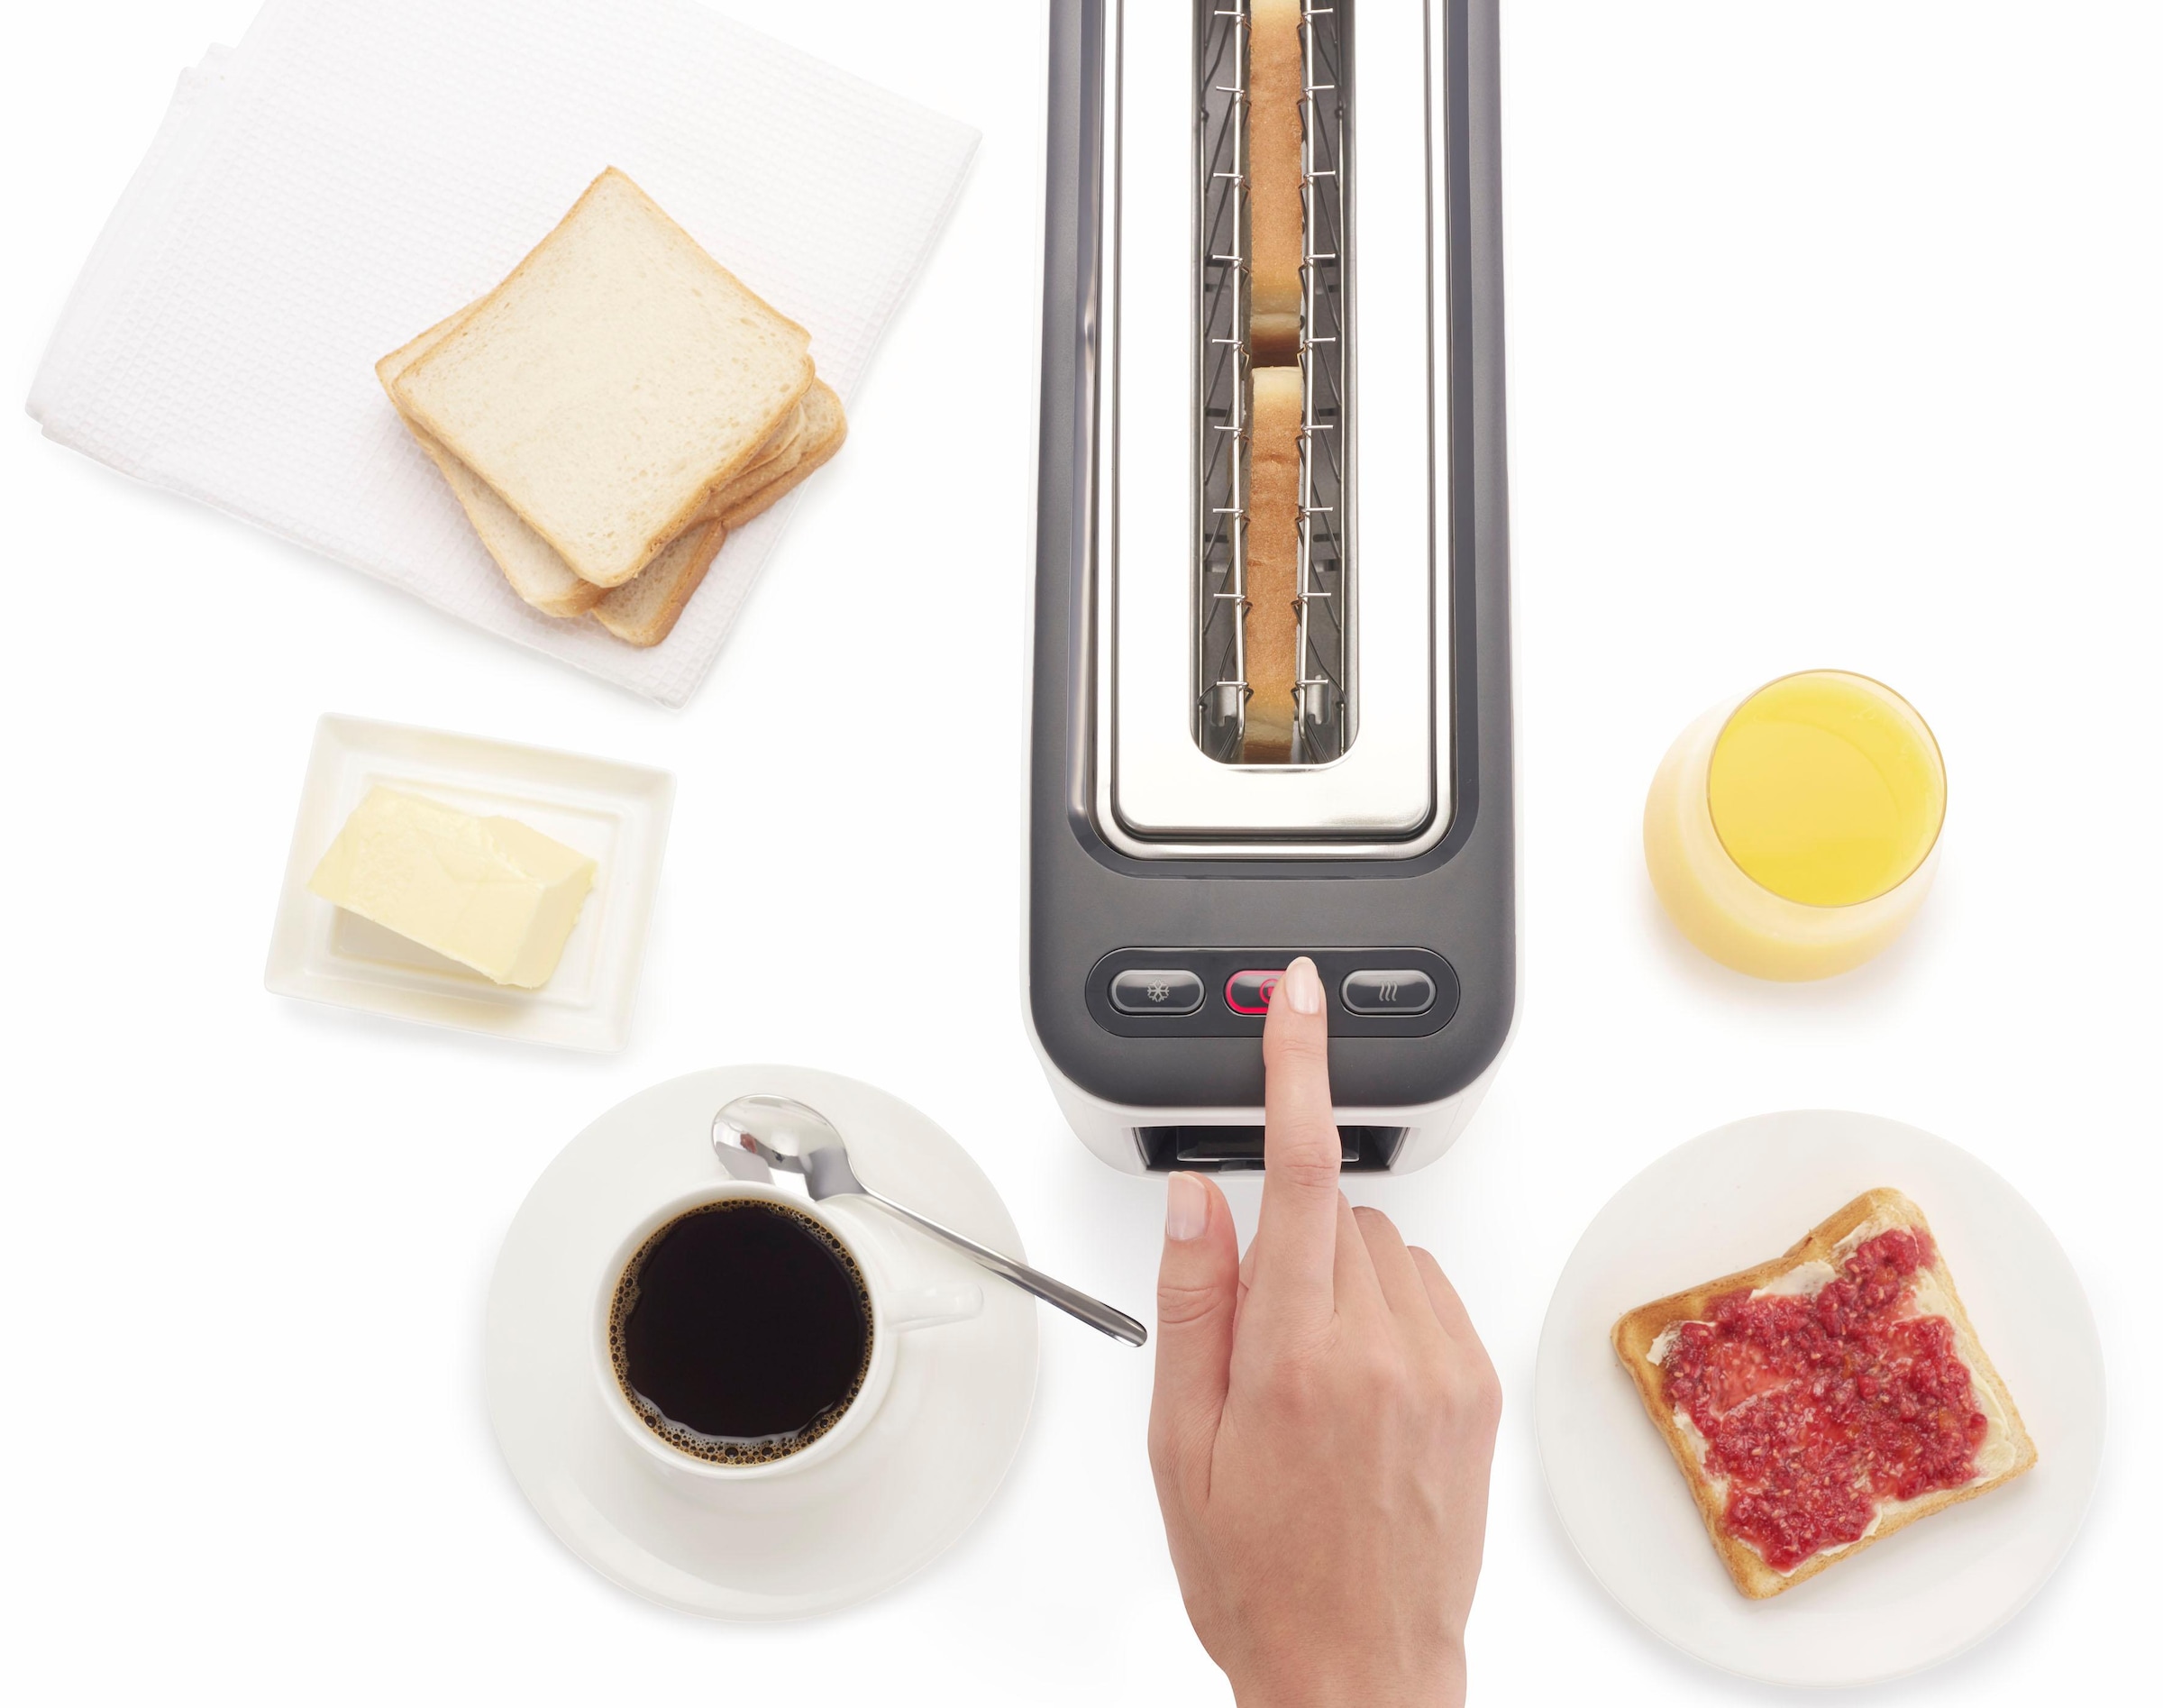 Braun Toaster »HT 3110 WH«, 1 langer Schlitz, für 2 Scheiben, 1000 W